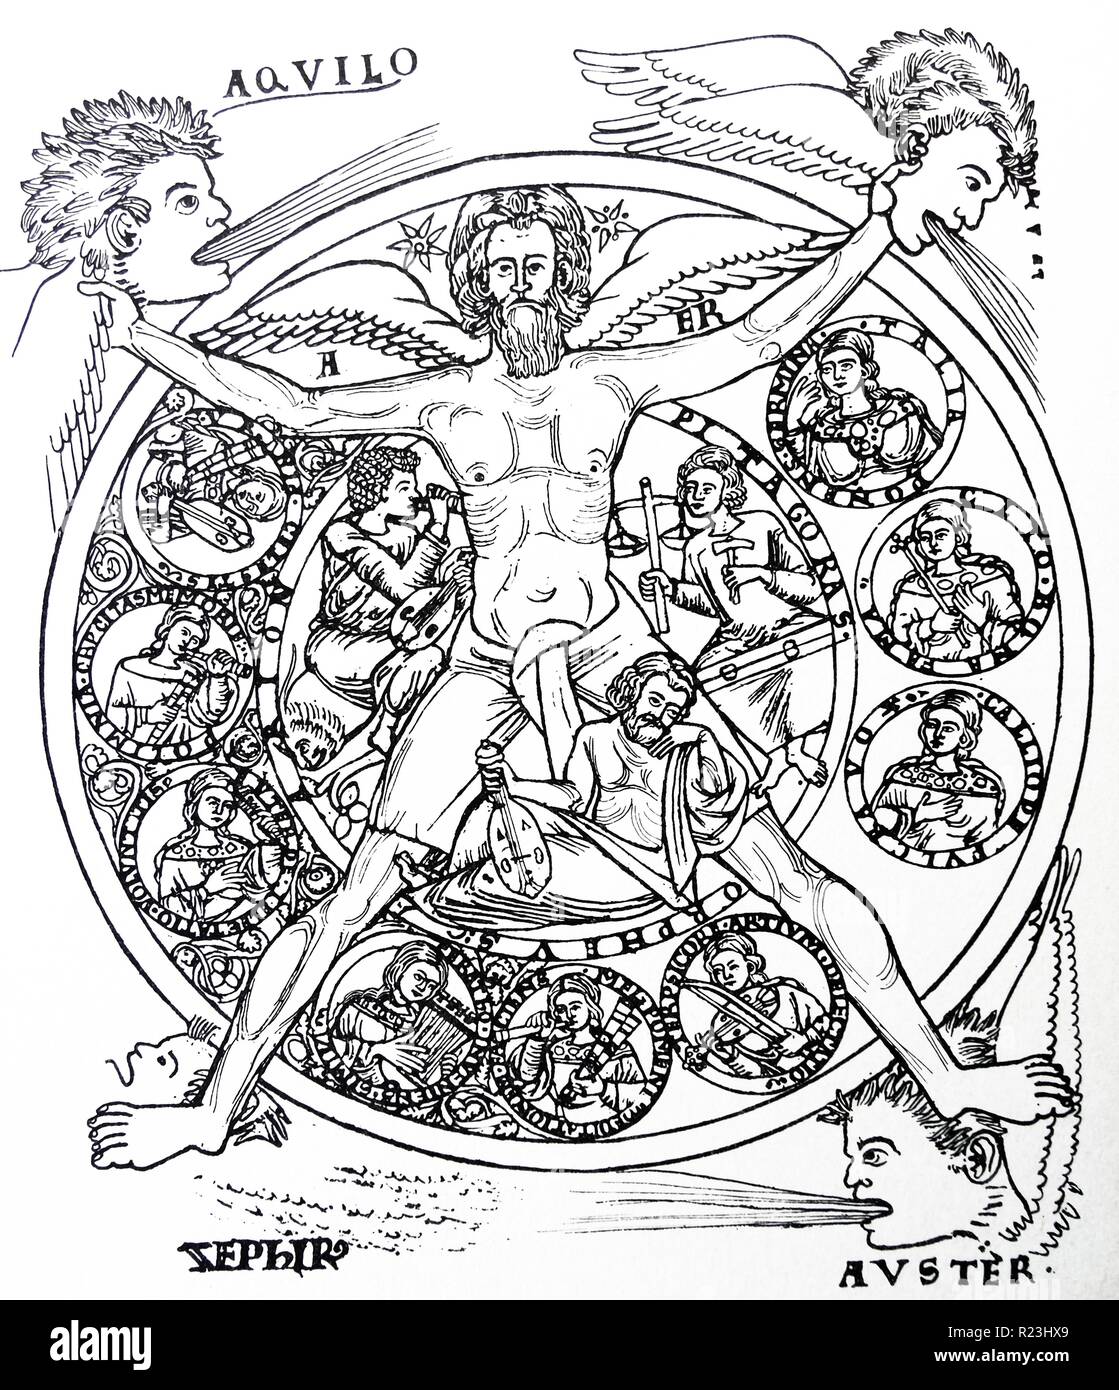 Disegno a matita di armonia personificata nella figura di aria (AER). Egli è il controllo dei quattro venti, e nei tre segmenti del cerchio cosmico sono medaglioni di nove muse sotto Arion, Orfeo e Pitagora. Datata xiii secolo Foto Stock